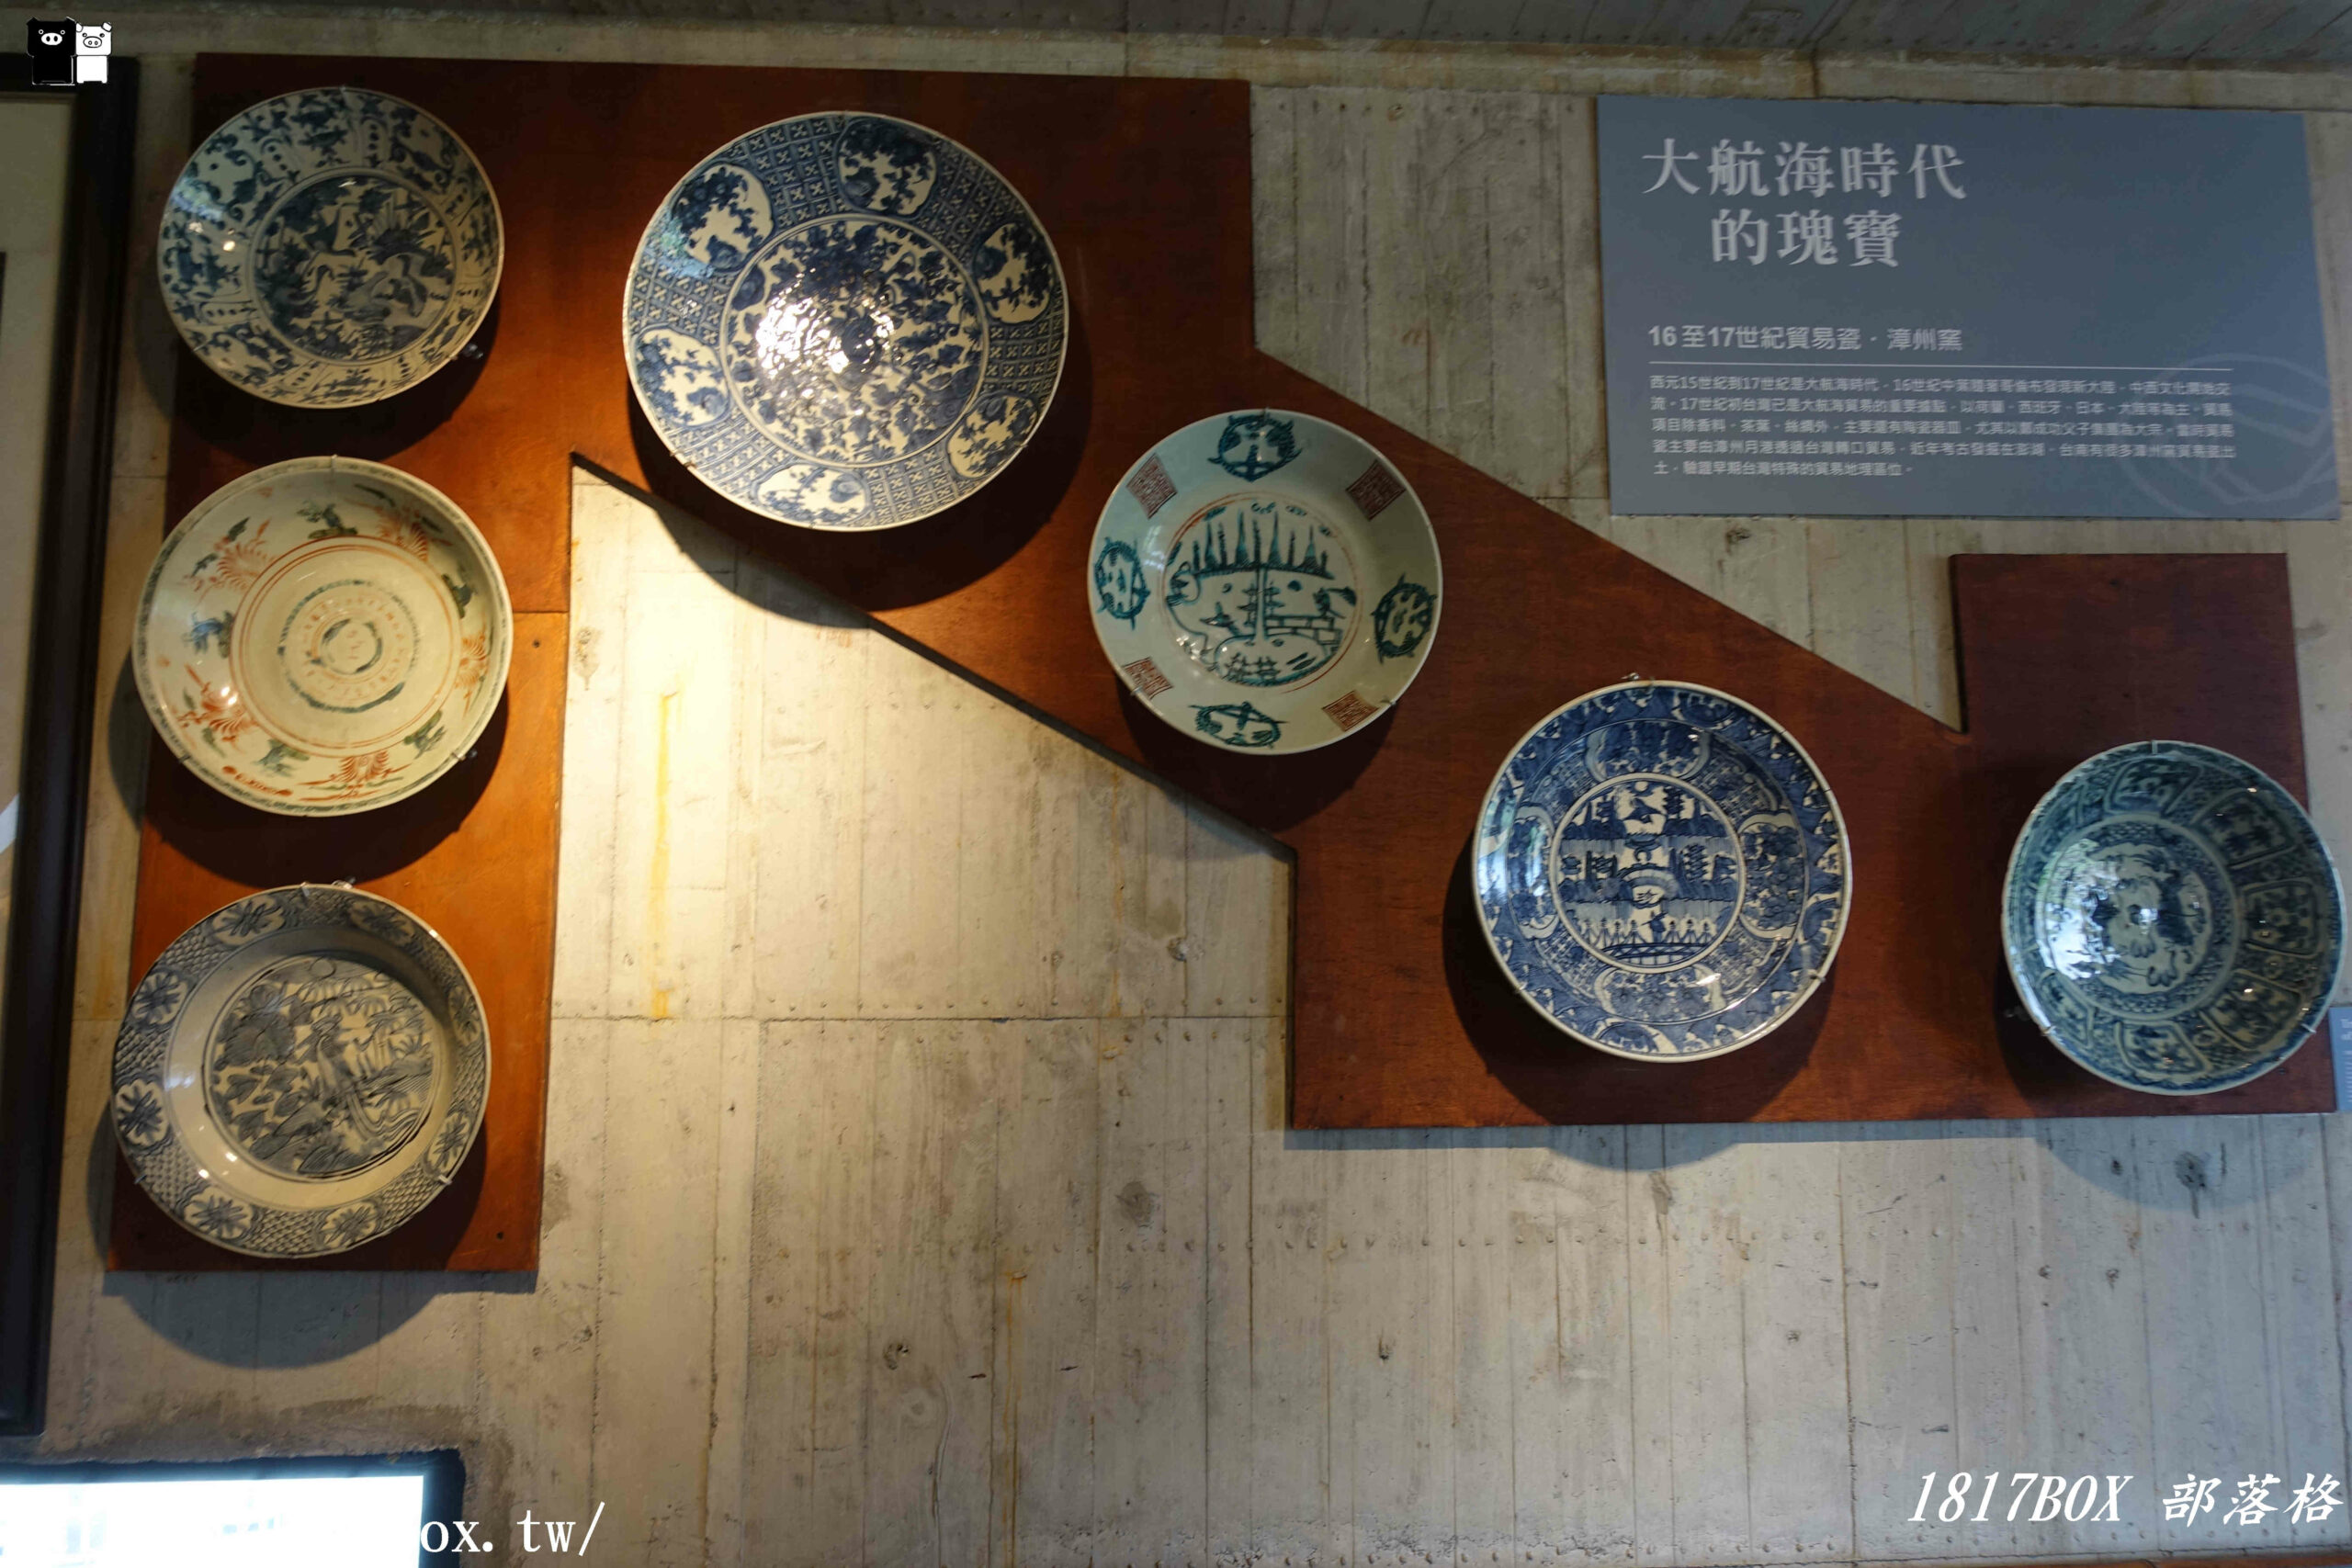 【宜蘭。五結】巨人用的盤子出現在宜蘭。台灣碗盤博物館。展出藝術品3萬多件。獨一無二的碗盤主題博物館 @1817BOX部落格